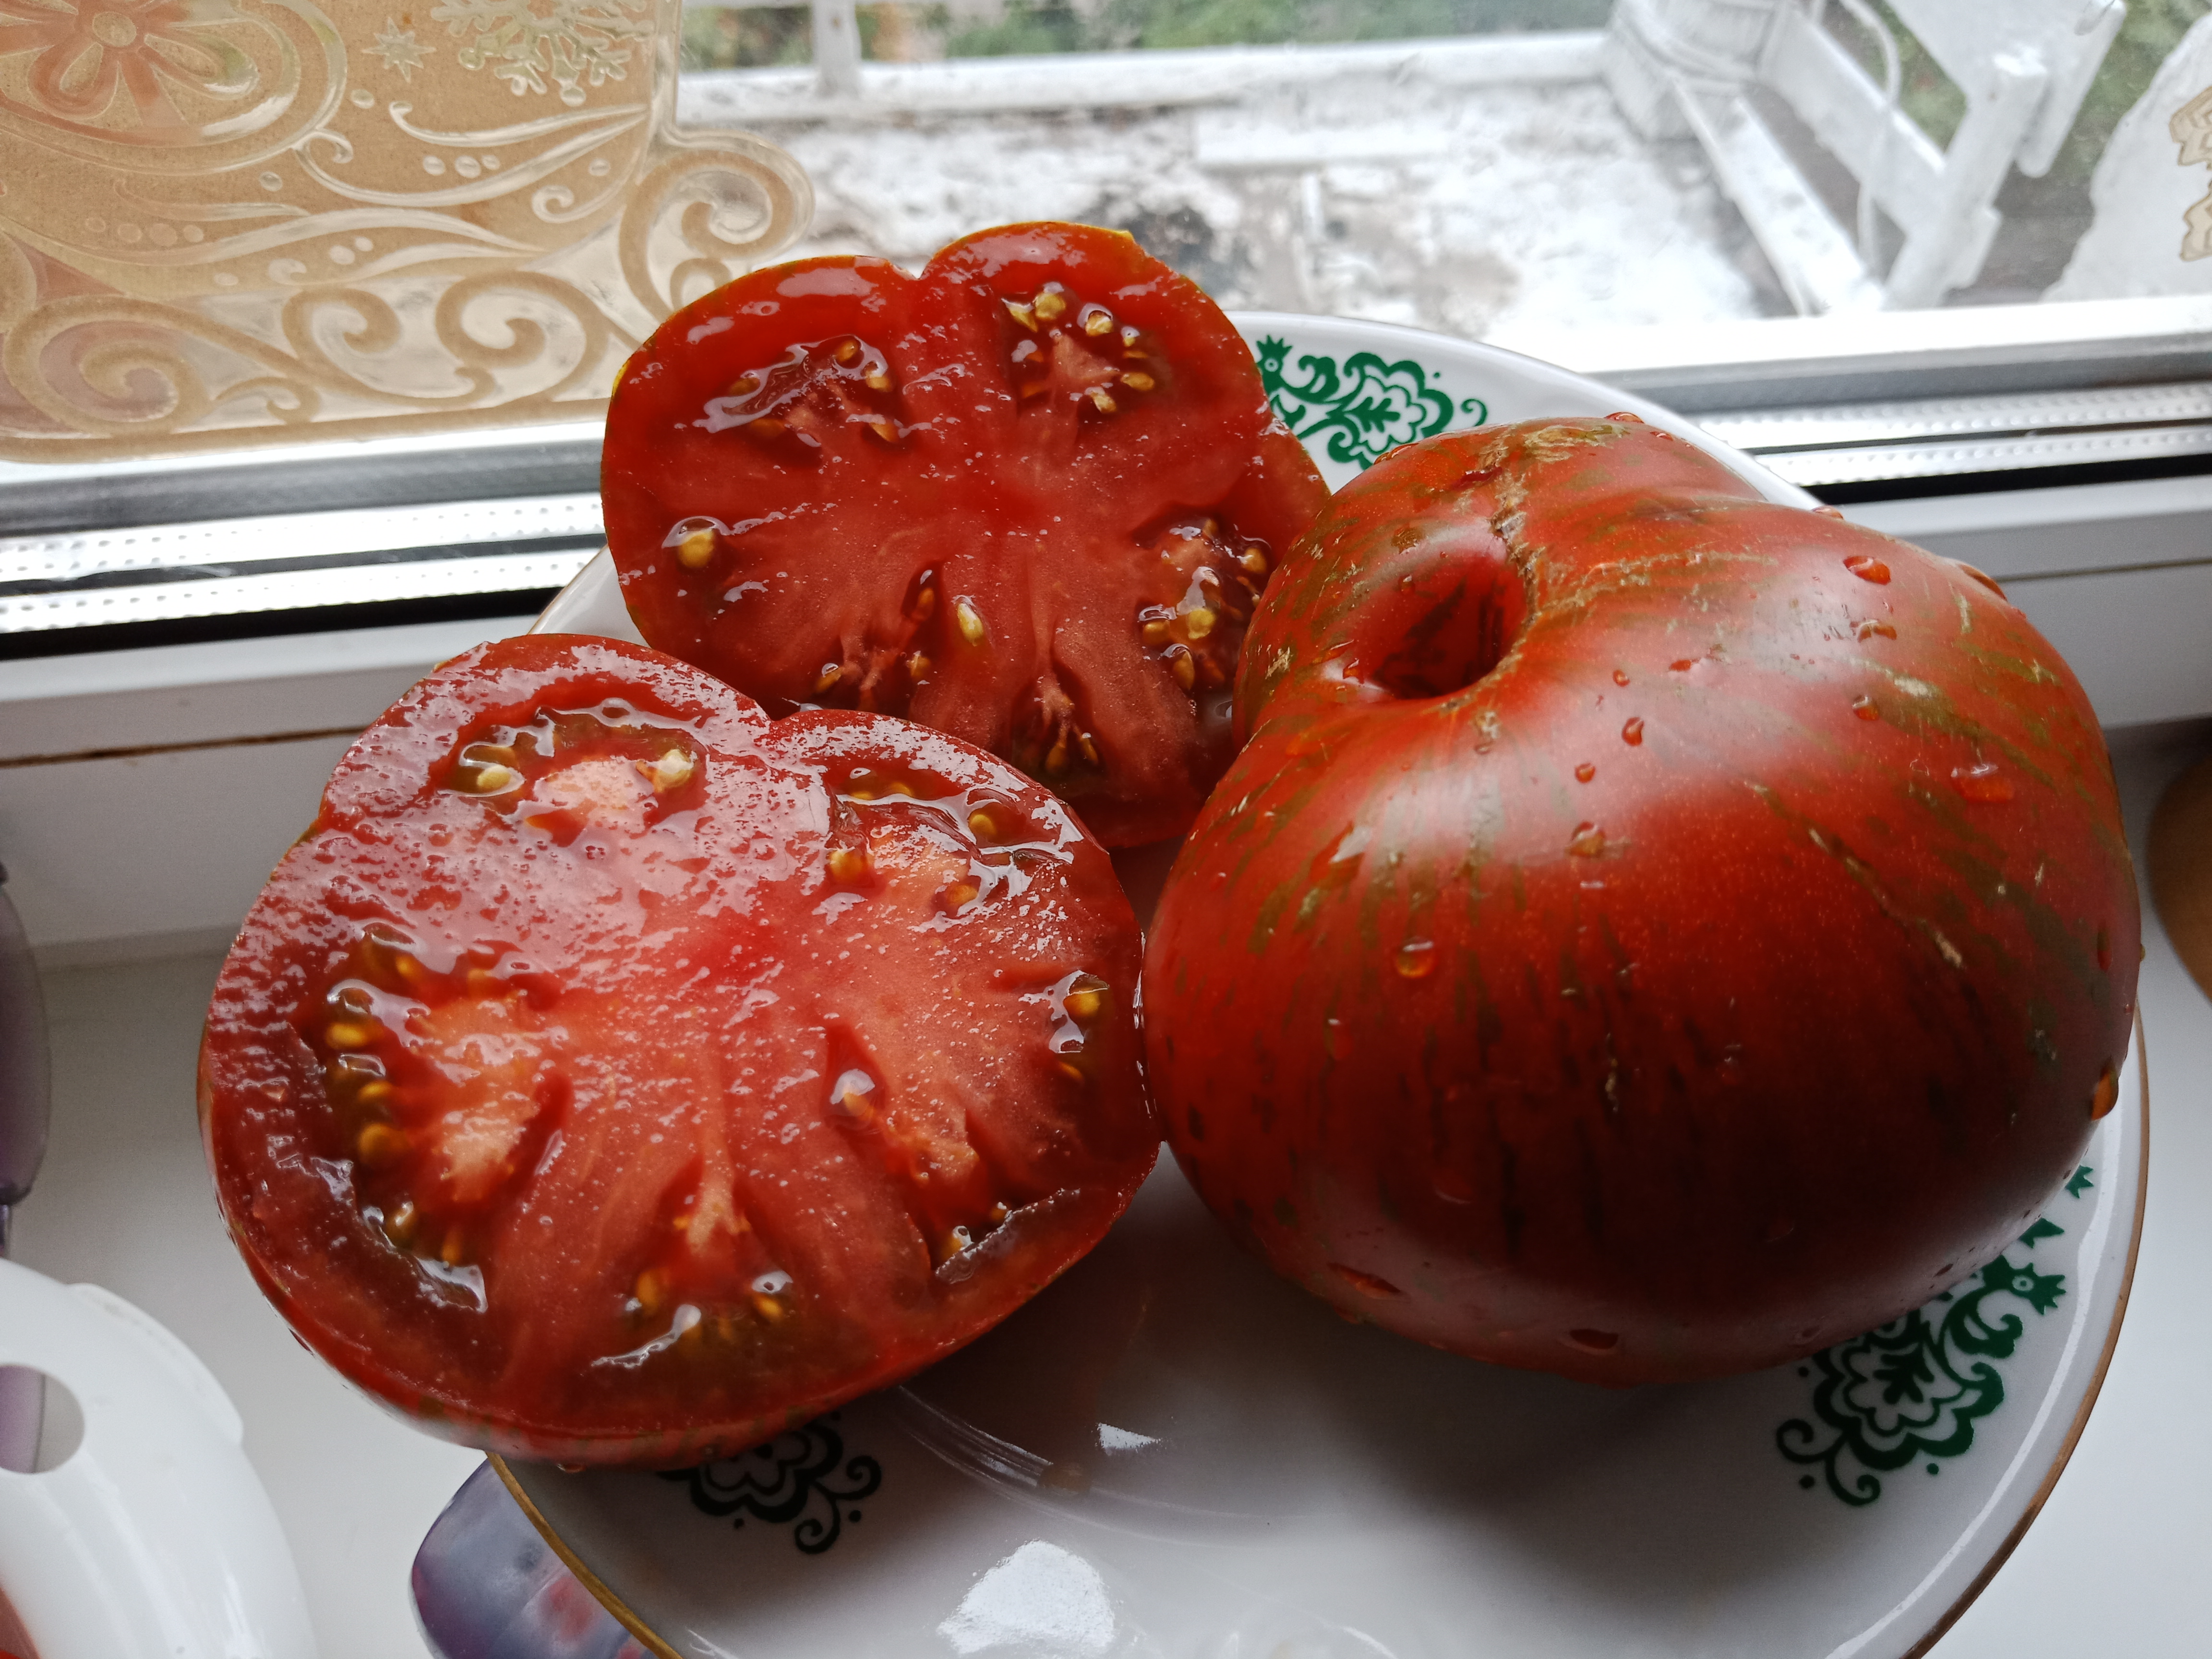 Сорт томатов любимый праздник отзывы